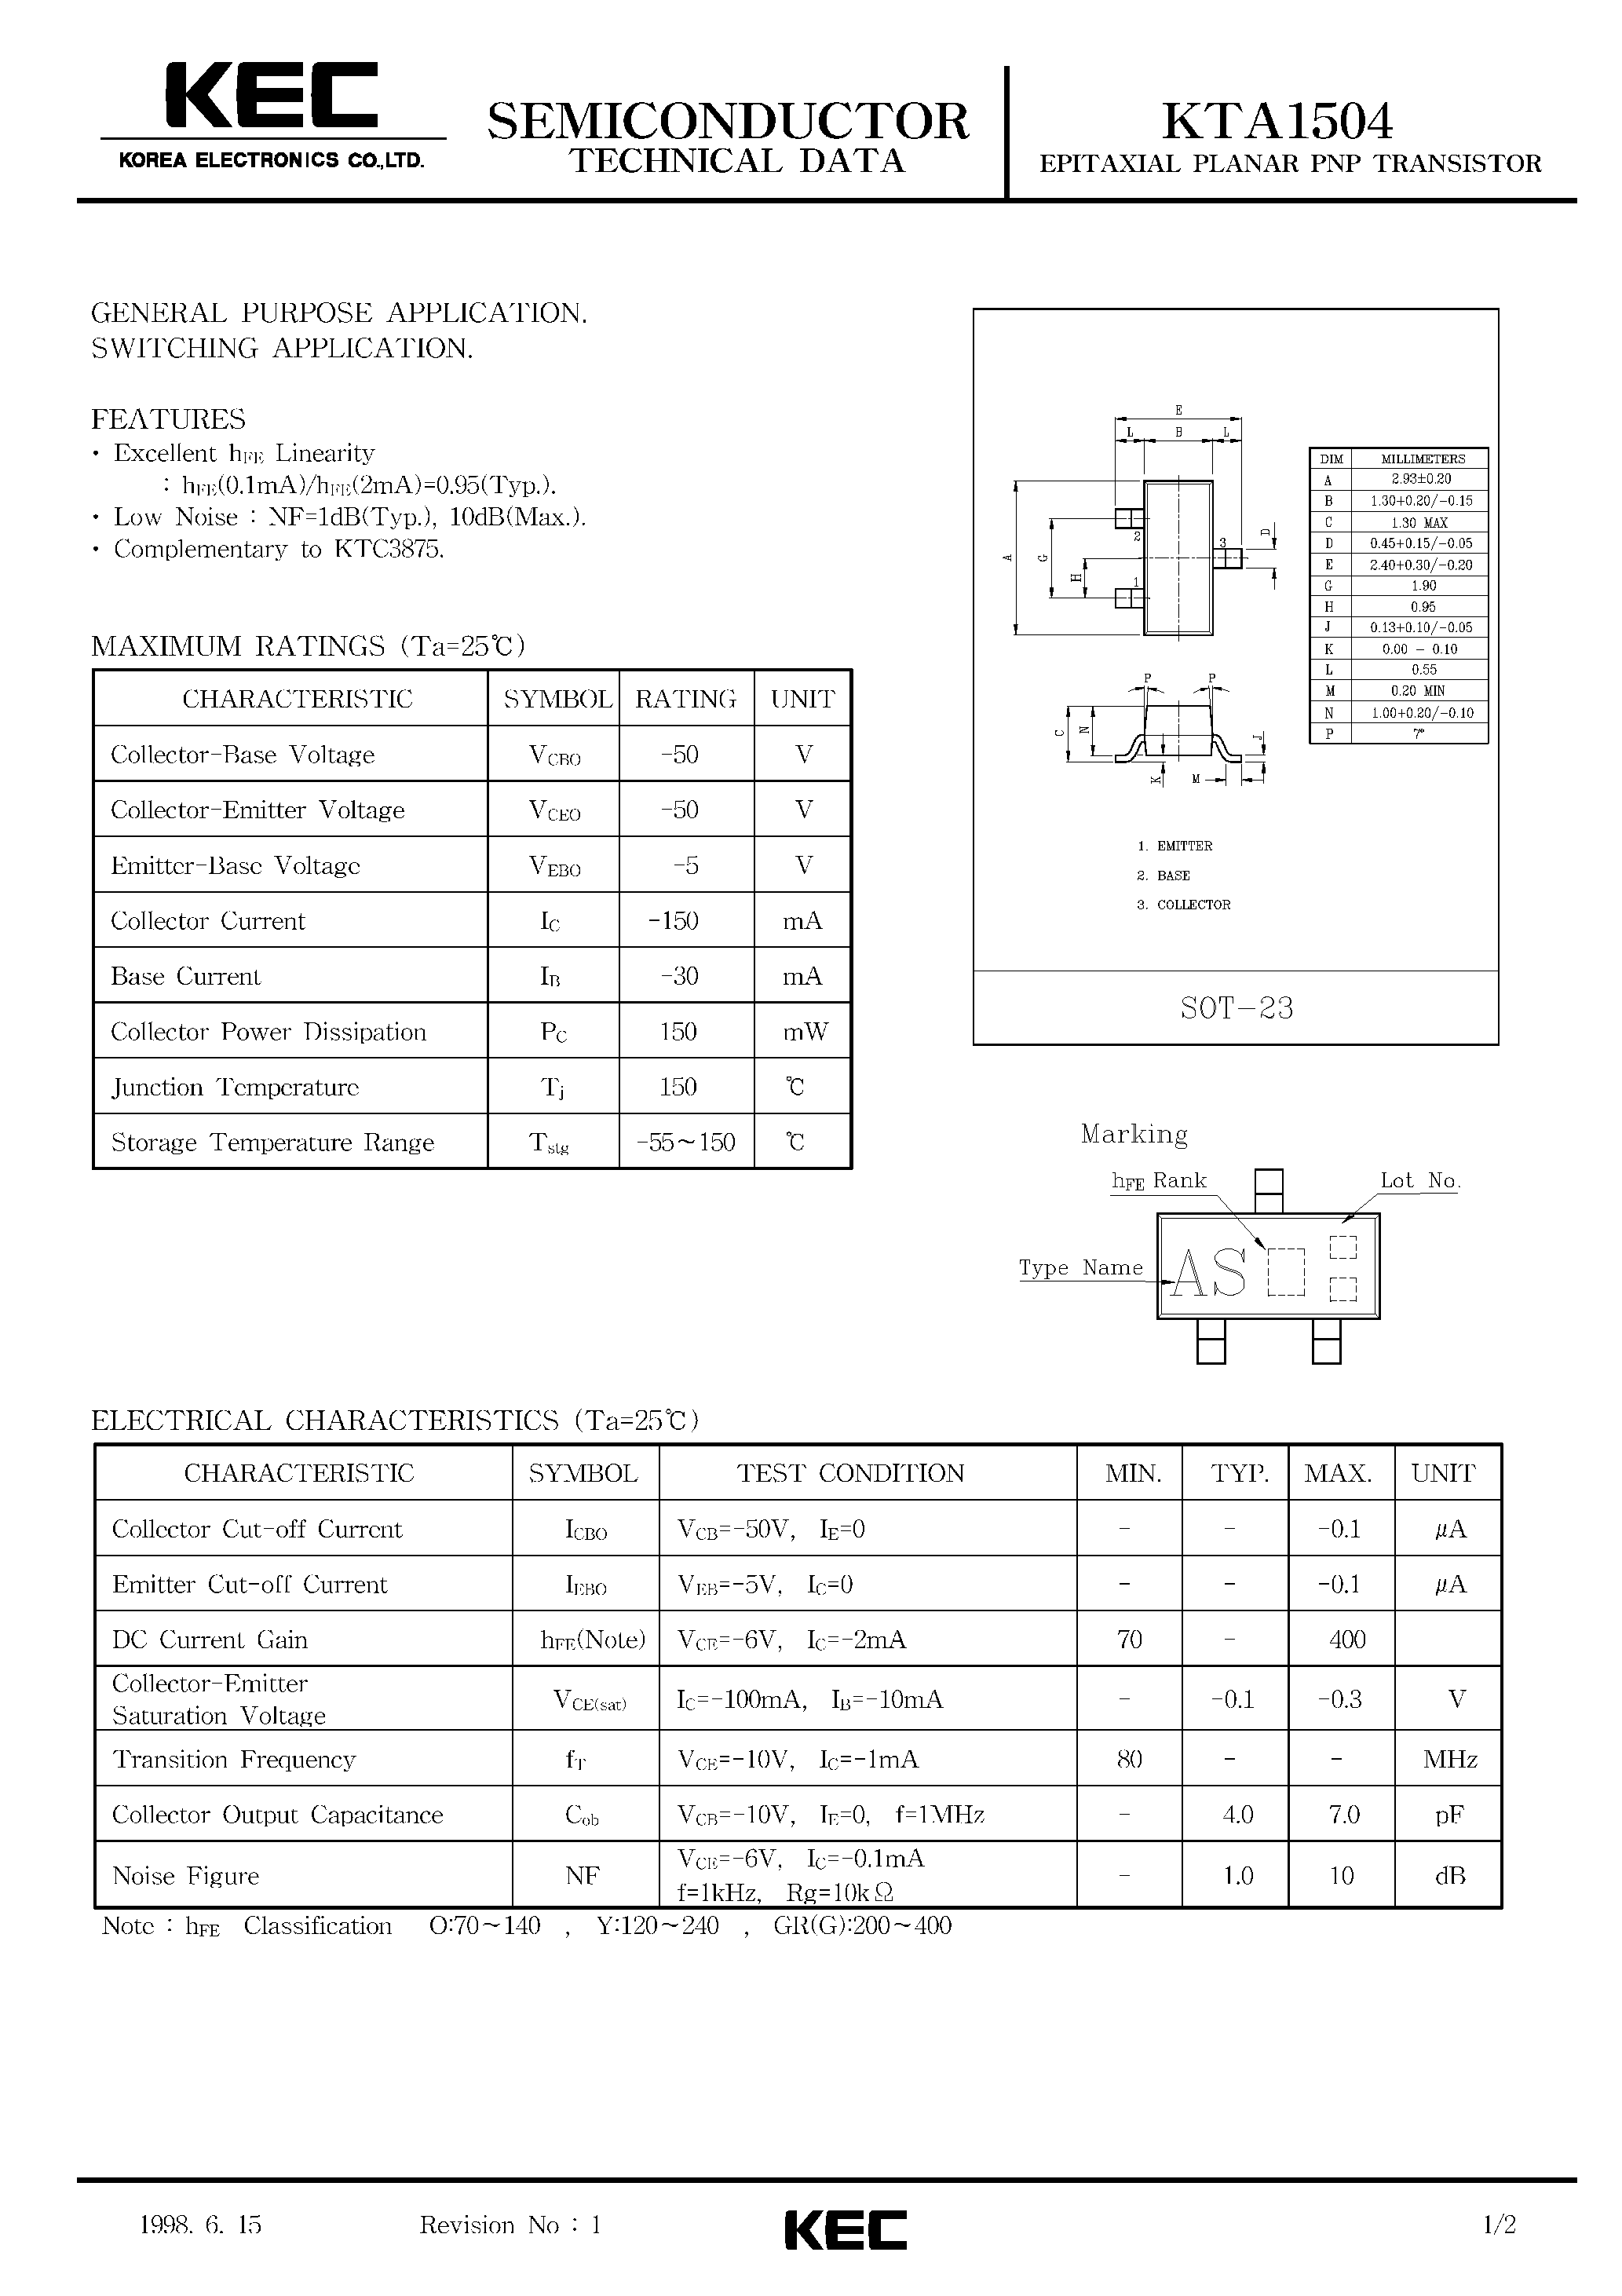 Datasheet KTA1504 - EPITAXIAL PLANAR PNP TRANSISTOR (GENERAL PURPOSE/ SWITCHING) page 1